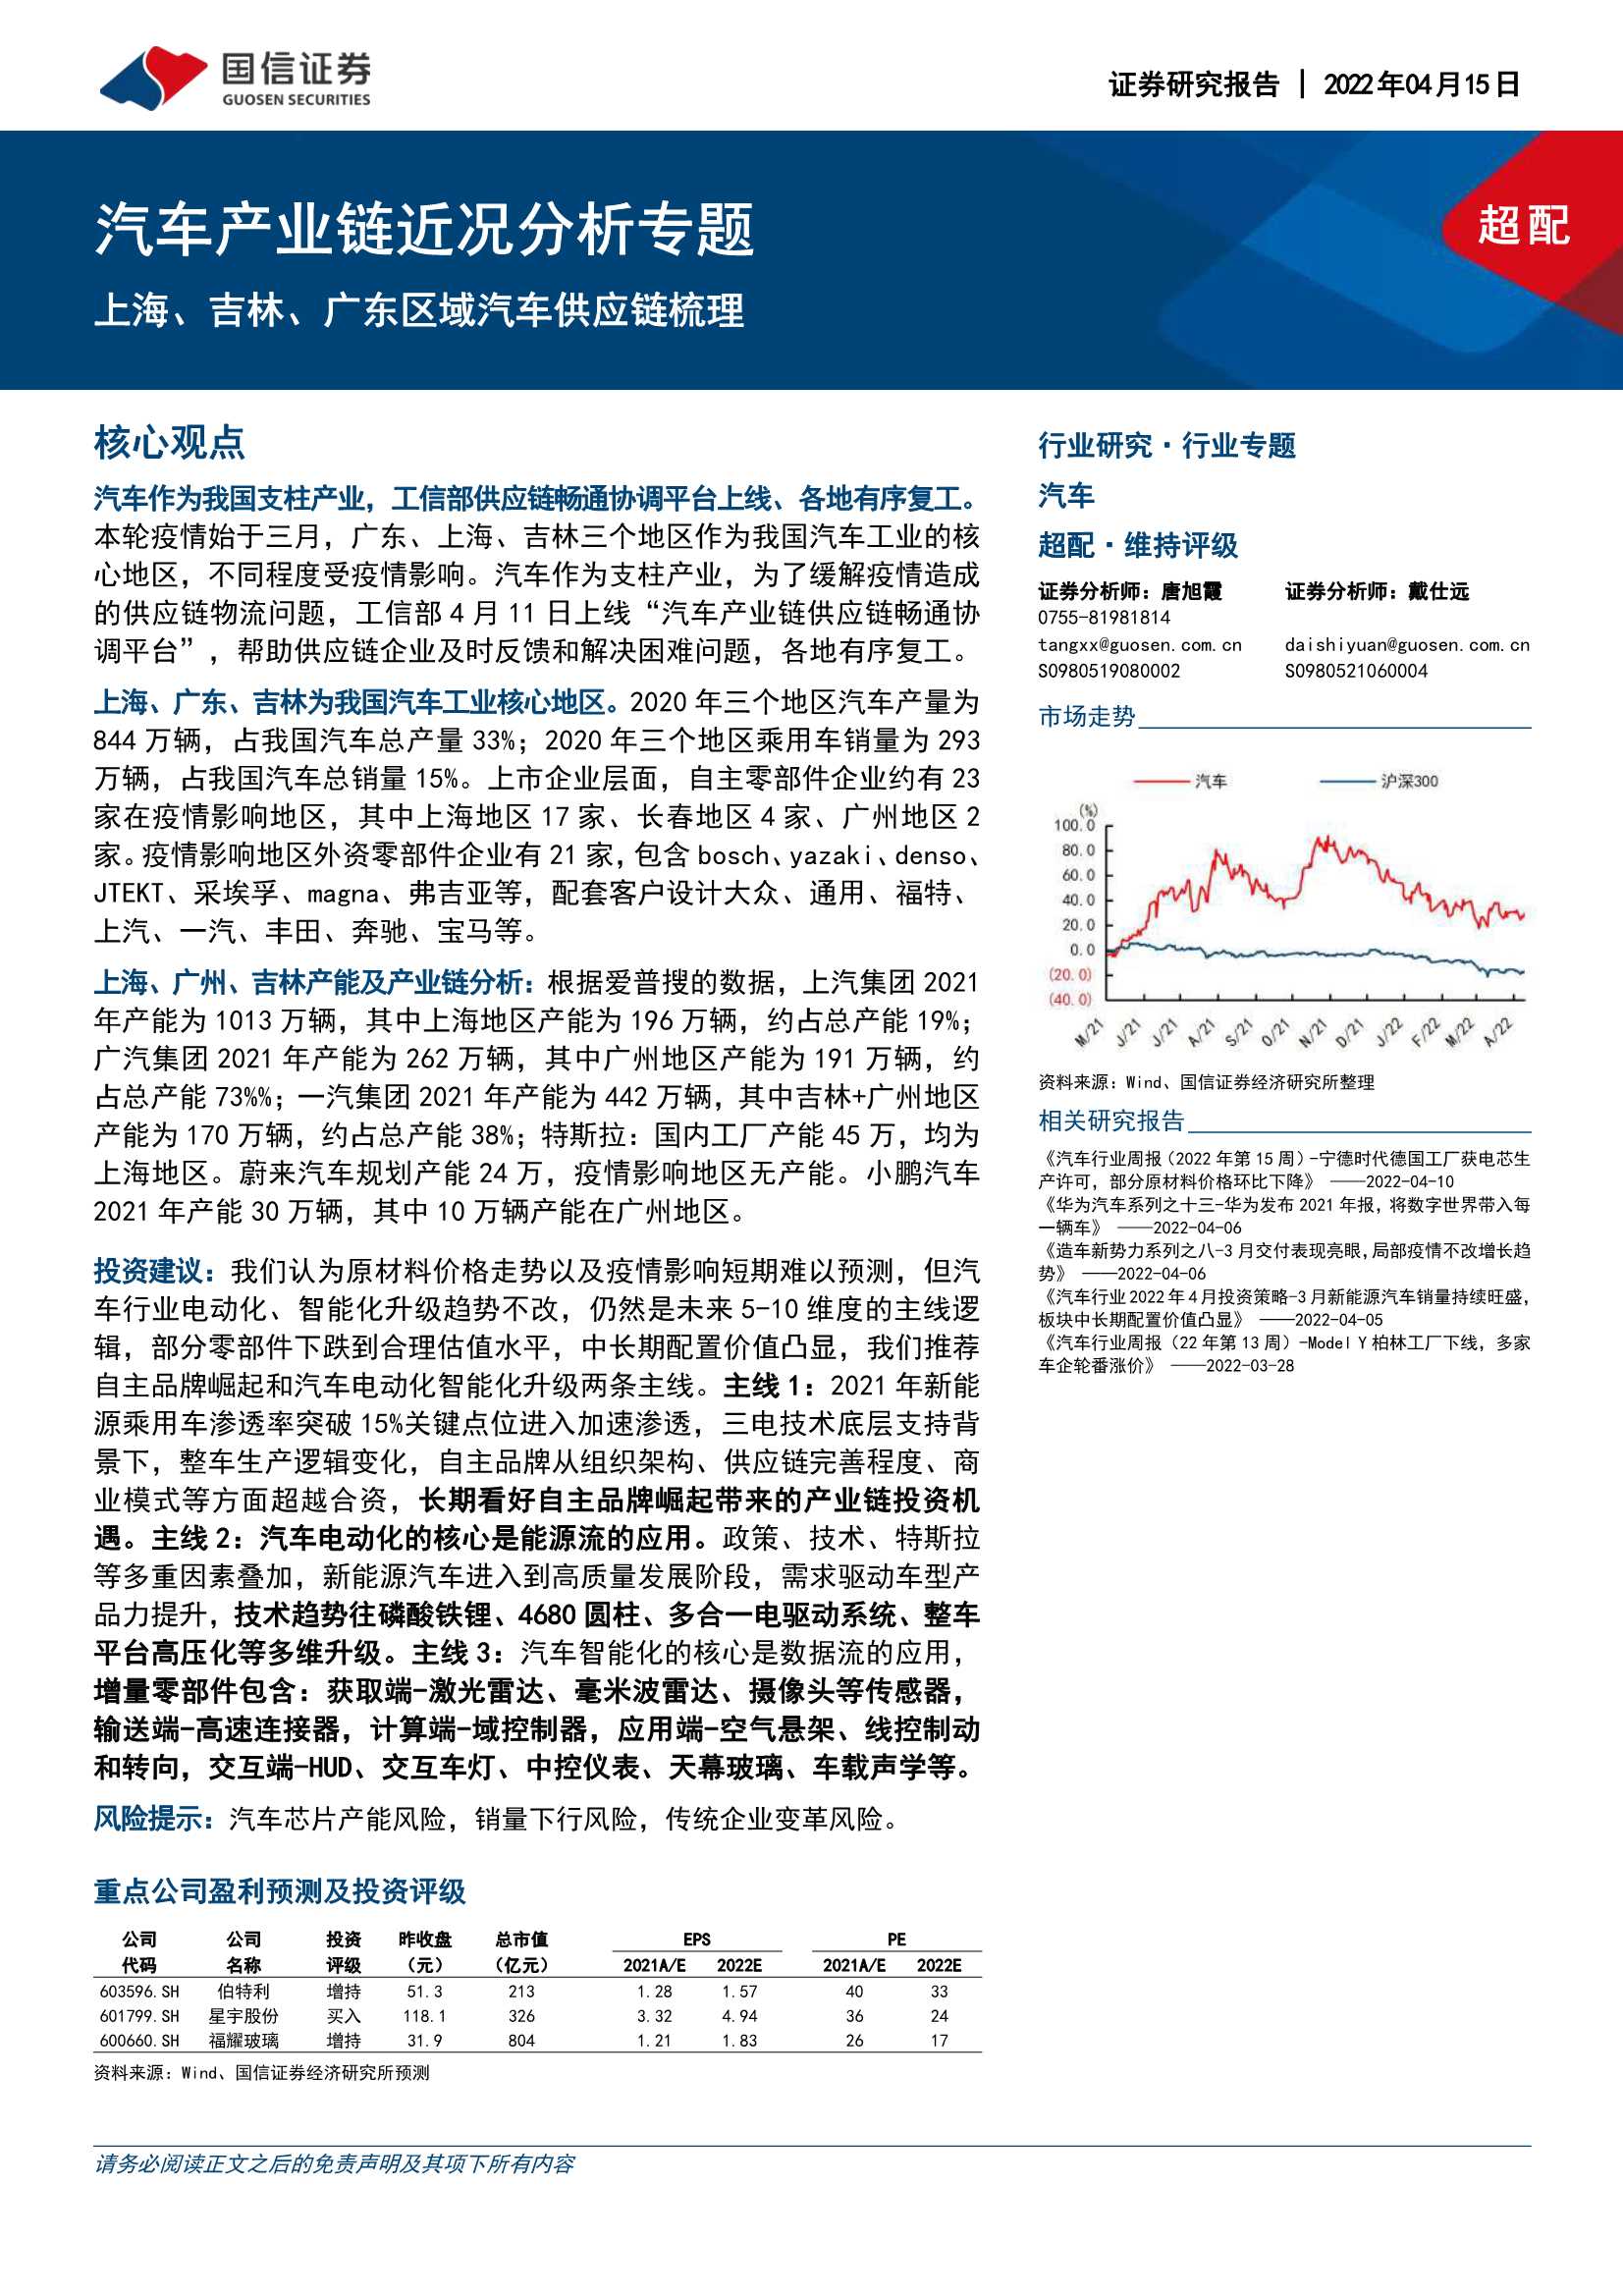 汽车行业产业链近况分析专题：上海、吉林、广东区域汽车供应链梳理-20220415-国信证券-24页